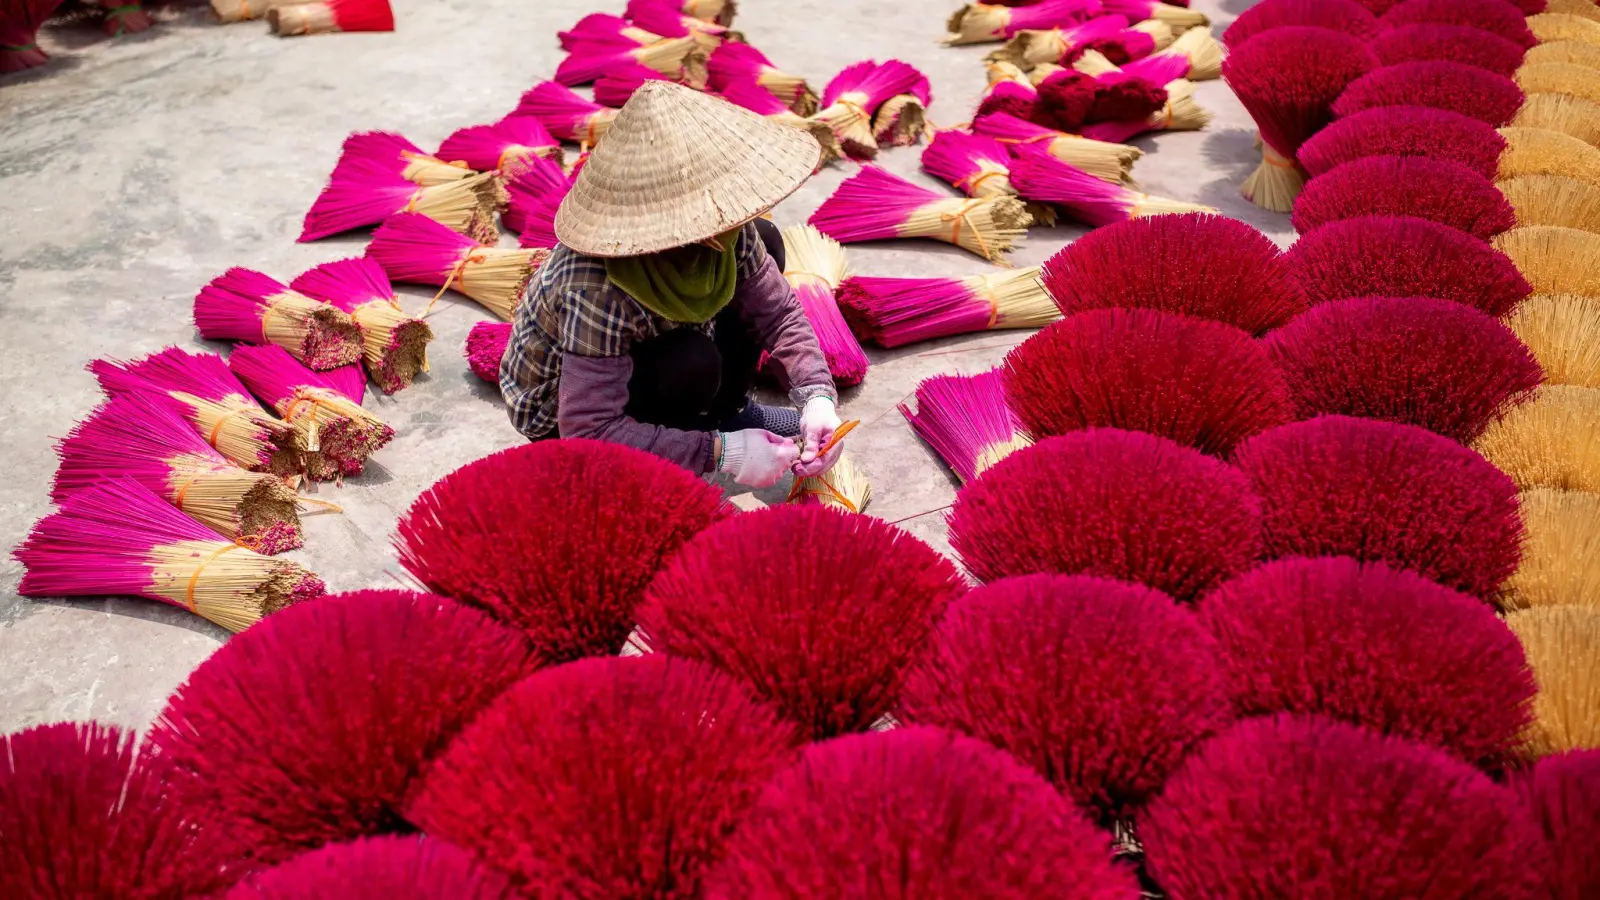 Mehr als 300 Familien stellen Weihrauch her, der in ganz Vietnam und in andere asiatische Länder verkauft wird. (Foto: Chris Humphrey/-/dpa)